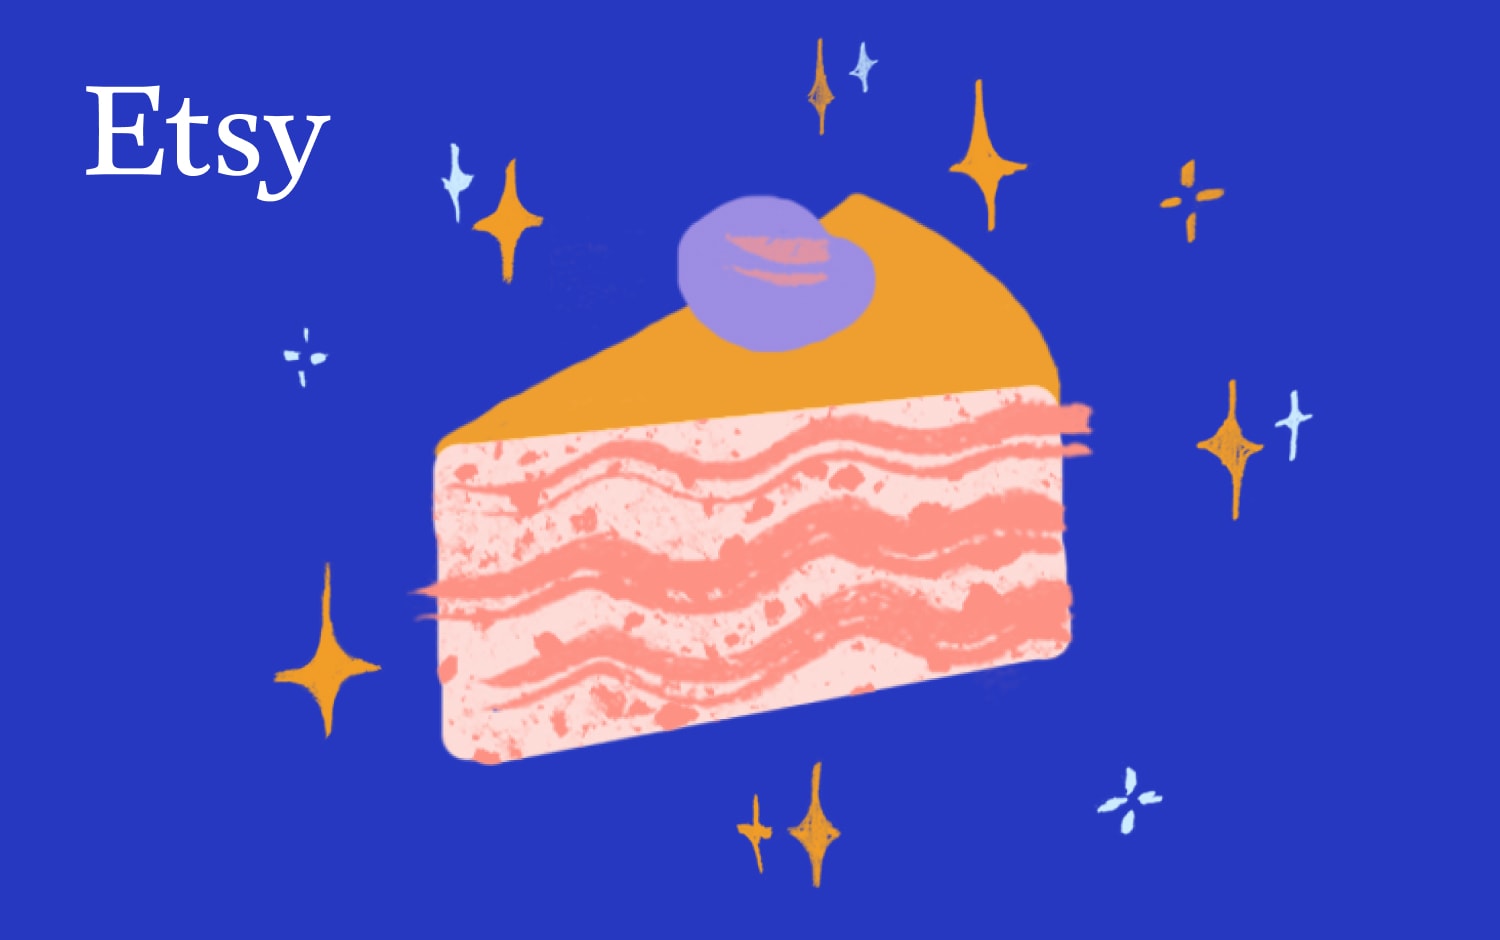 Illustratie van een stuk taart met meerdere lagen en roze glazuur, met bovenop een paarse decoratie in de vorm van een bes. De achtergrond is diepblauw met verschillende witte en gele sterretjes. Linksboven staat een wit Etsy-logo.